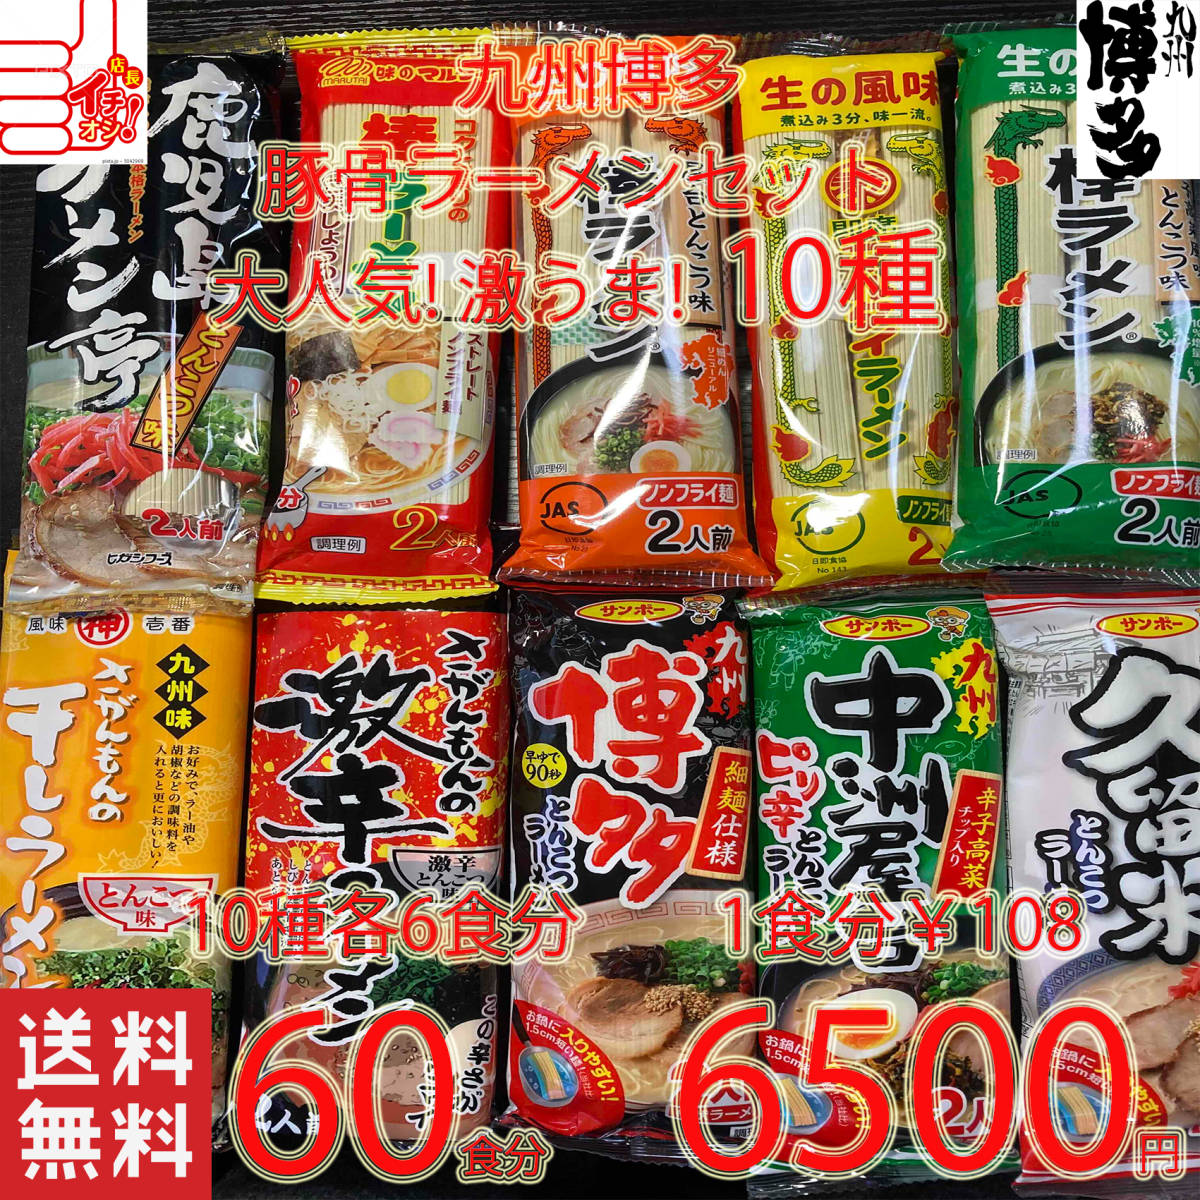 大人気 激ウマ 九州博多 豚骨ラーメンセット10種類 おすすめ セット716